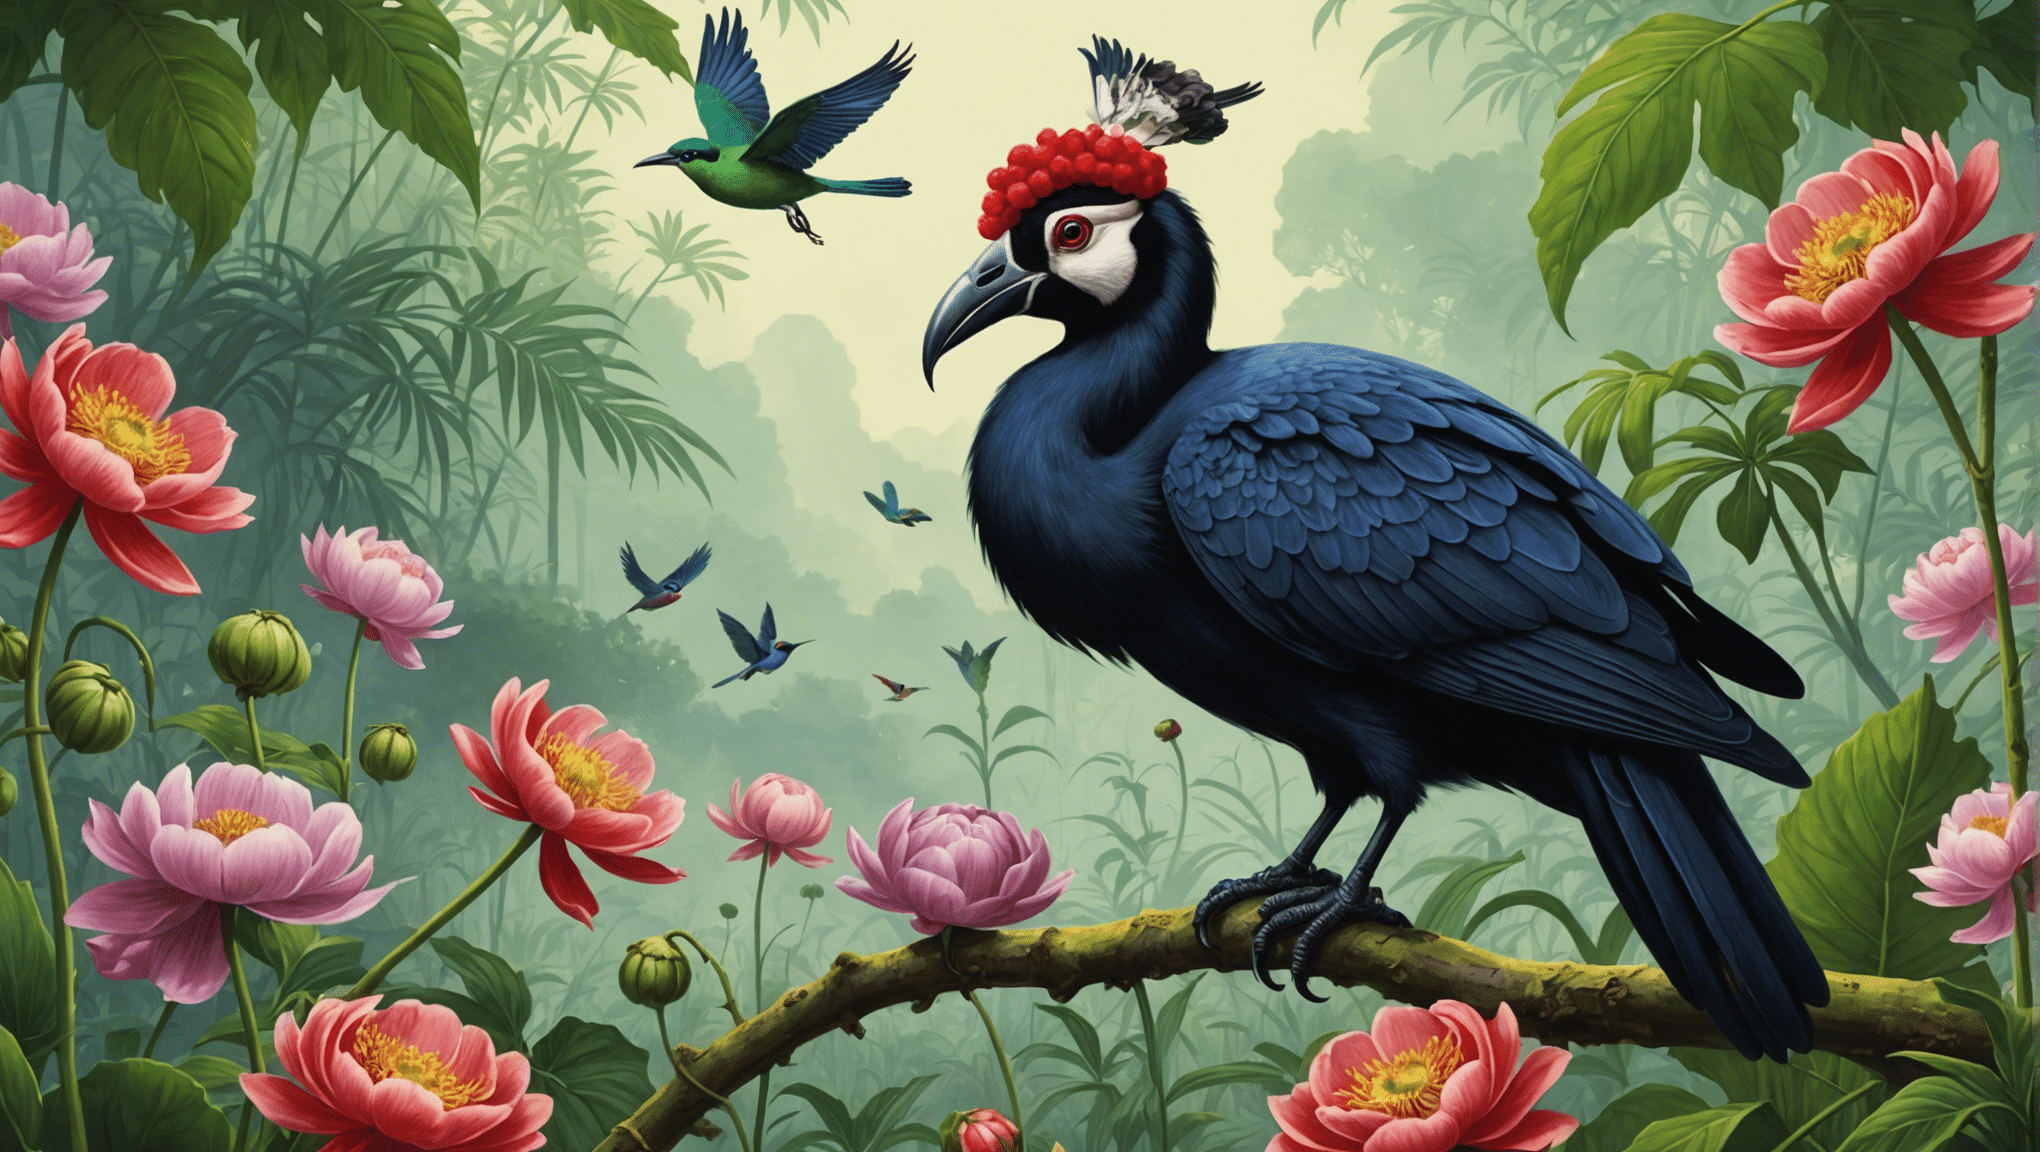 découvrez la menace environnementale potentielle posée par les oiseaux d'opium et leur impact sur l'écosystème. apprenez-en davantage sur les dangers et les conséquences des oiseaux d’opium dans l’environnement.